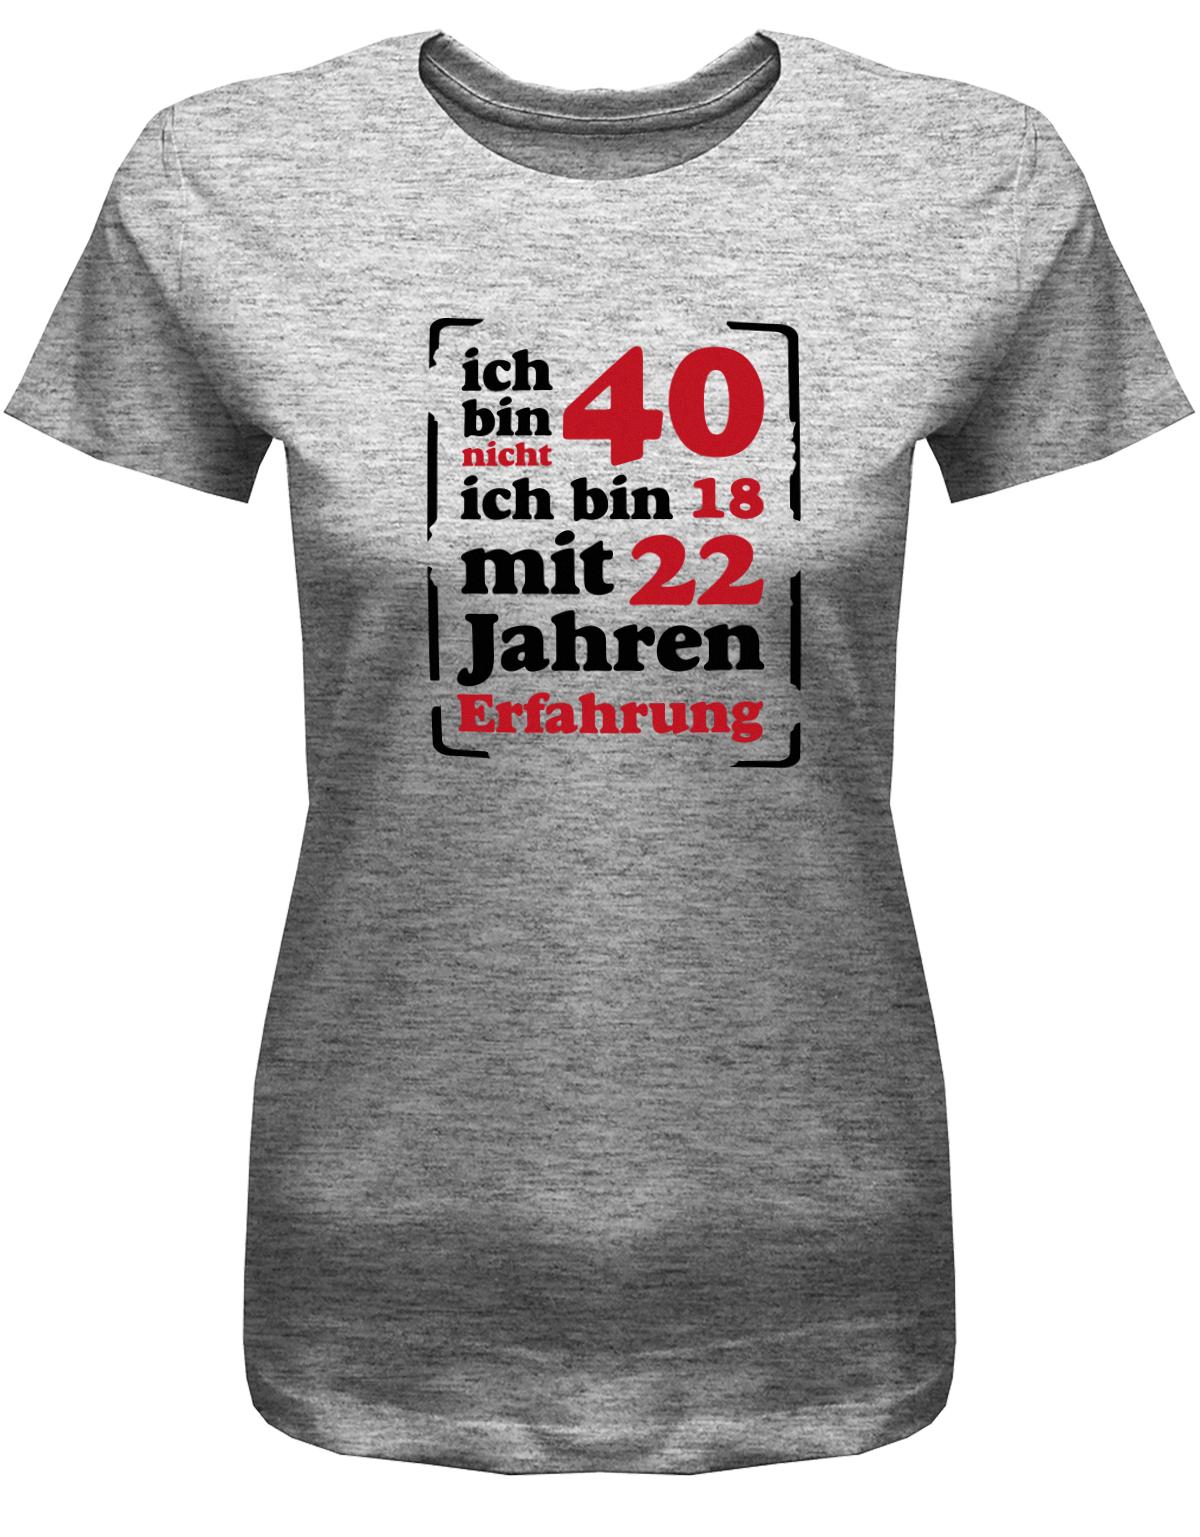 Lustiges T-Shirt zum 40. Geburtstag für die Frau Bedruckt mit Ich bin nicht 40, ich bin 18, mit 32 Jahren Erfahrung. Grau